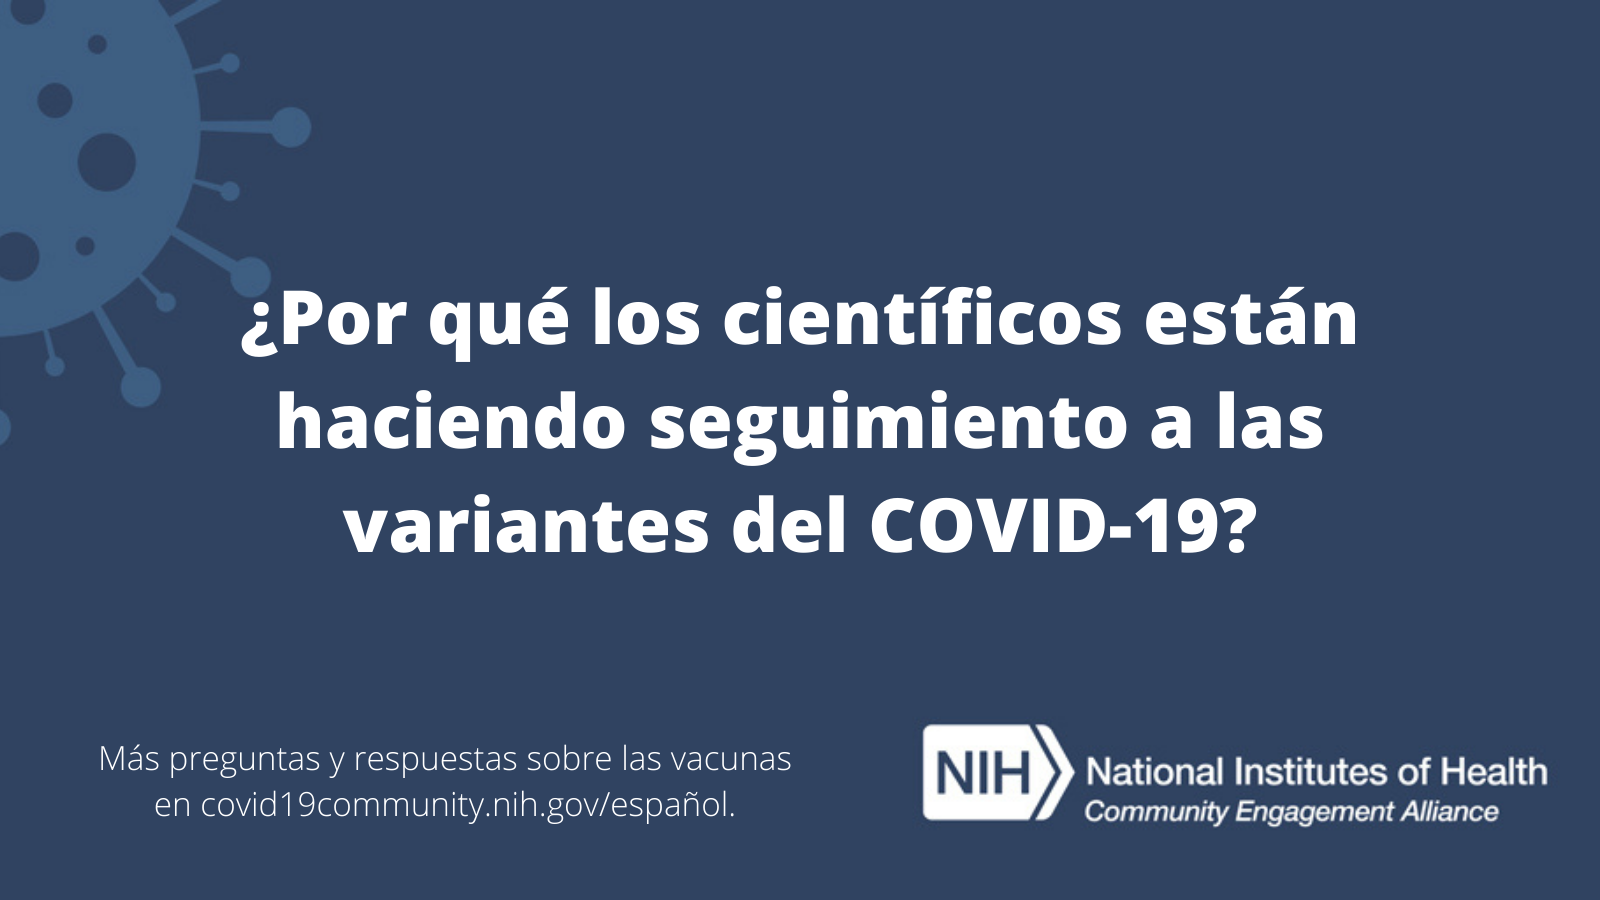 ¿Por qué los científicos están haciendo seguimiento a las variantes del COVID-19? Más preguntas y respuestas sobre las vacunas en covid19community.nih.gov/español.